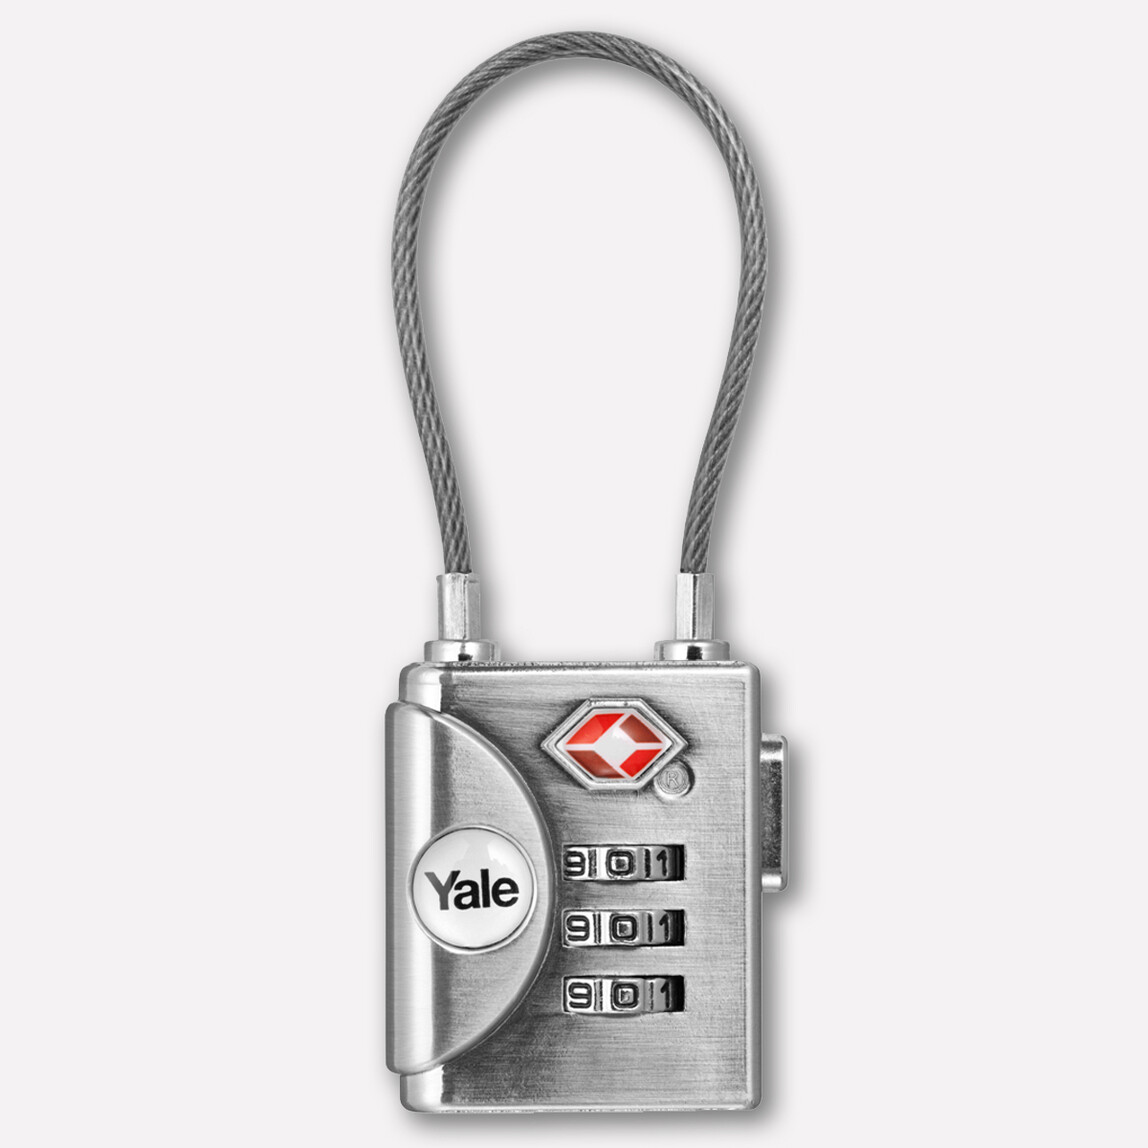    Yale TSA Onaylı Kablolu Şifreli Asma Kilit   